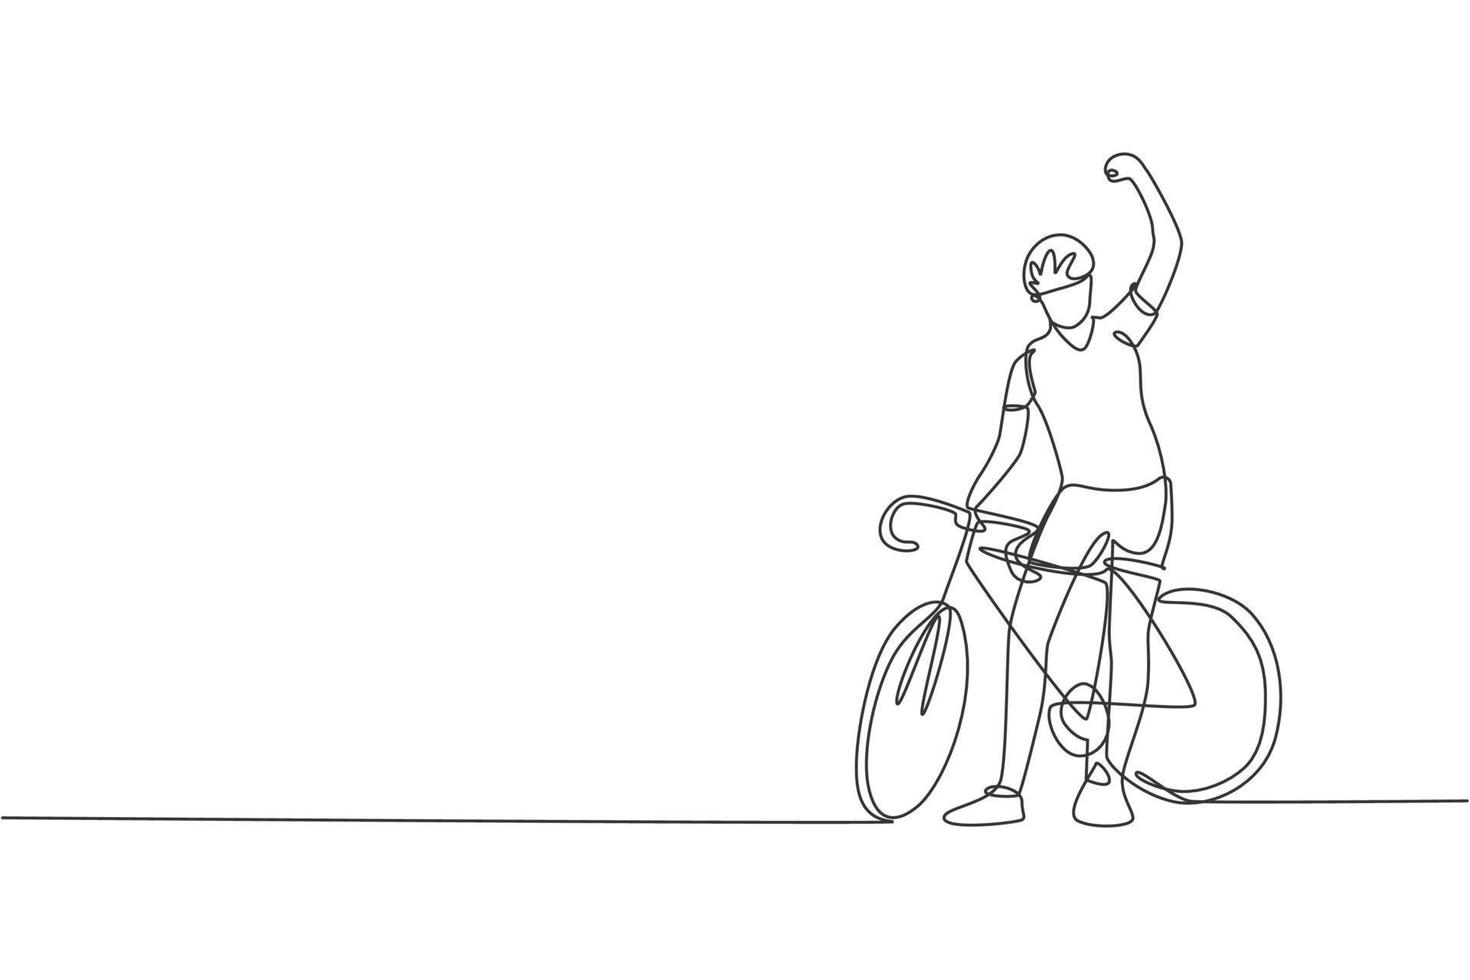 um único desenho de linha do jovem piloto de bicicleta enérgico levanta a mão após terminar a corrida. ilustração em vetor conceito ciclista de corrida. design moderno de desenho de linha contínua para banner de torneio de ciclismo